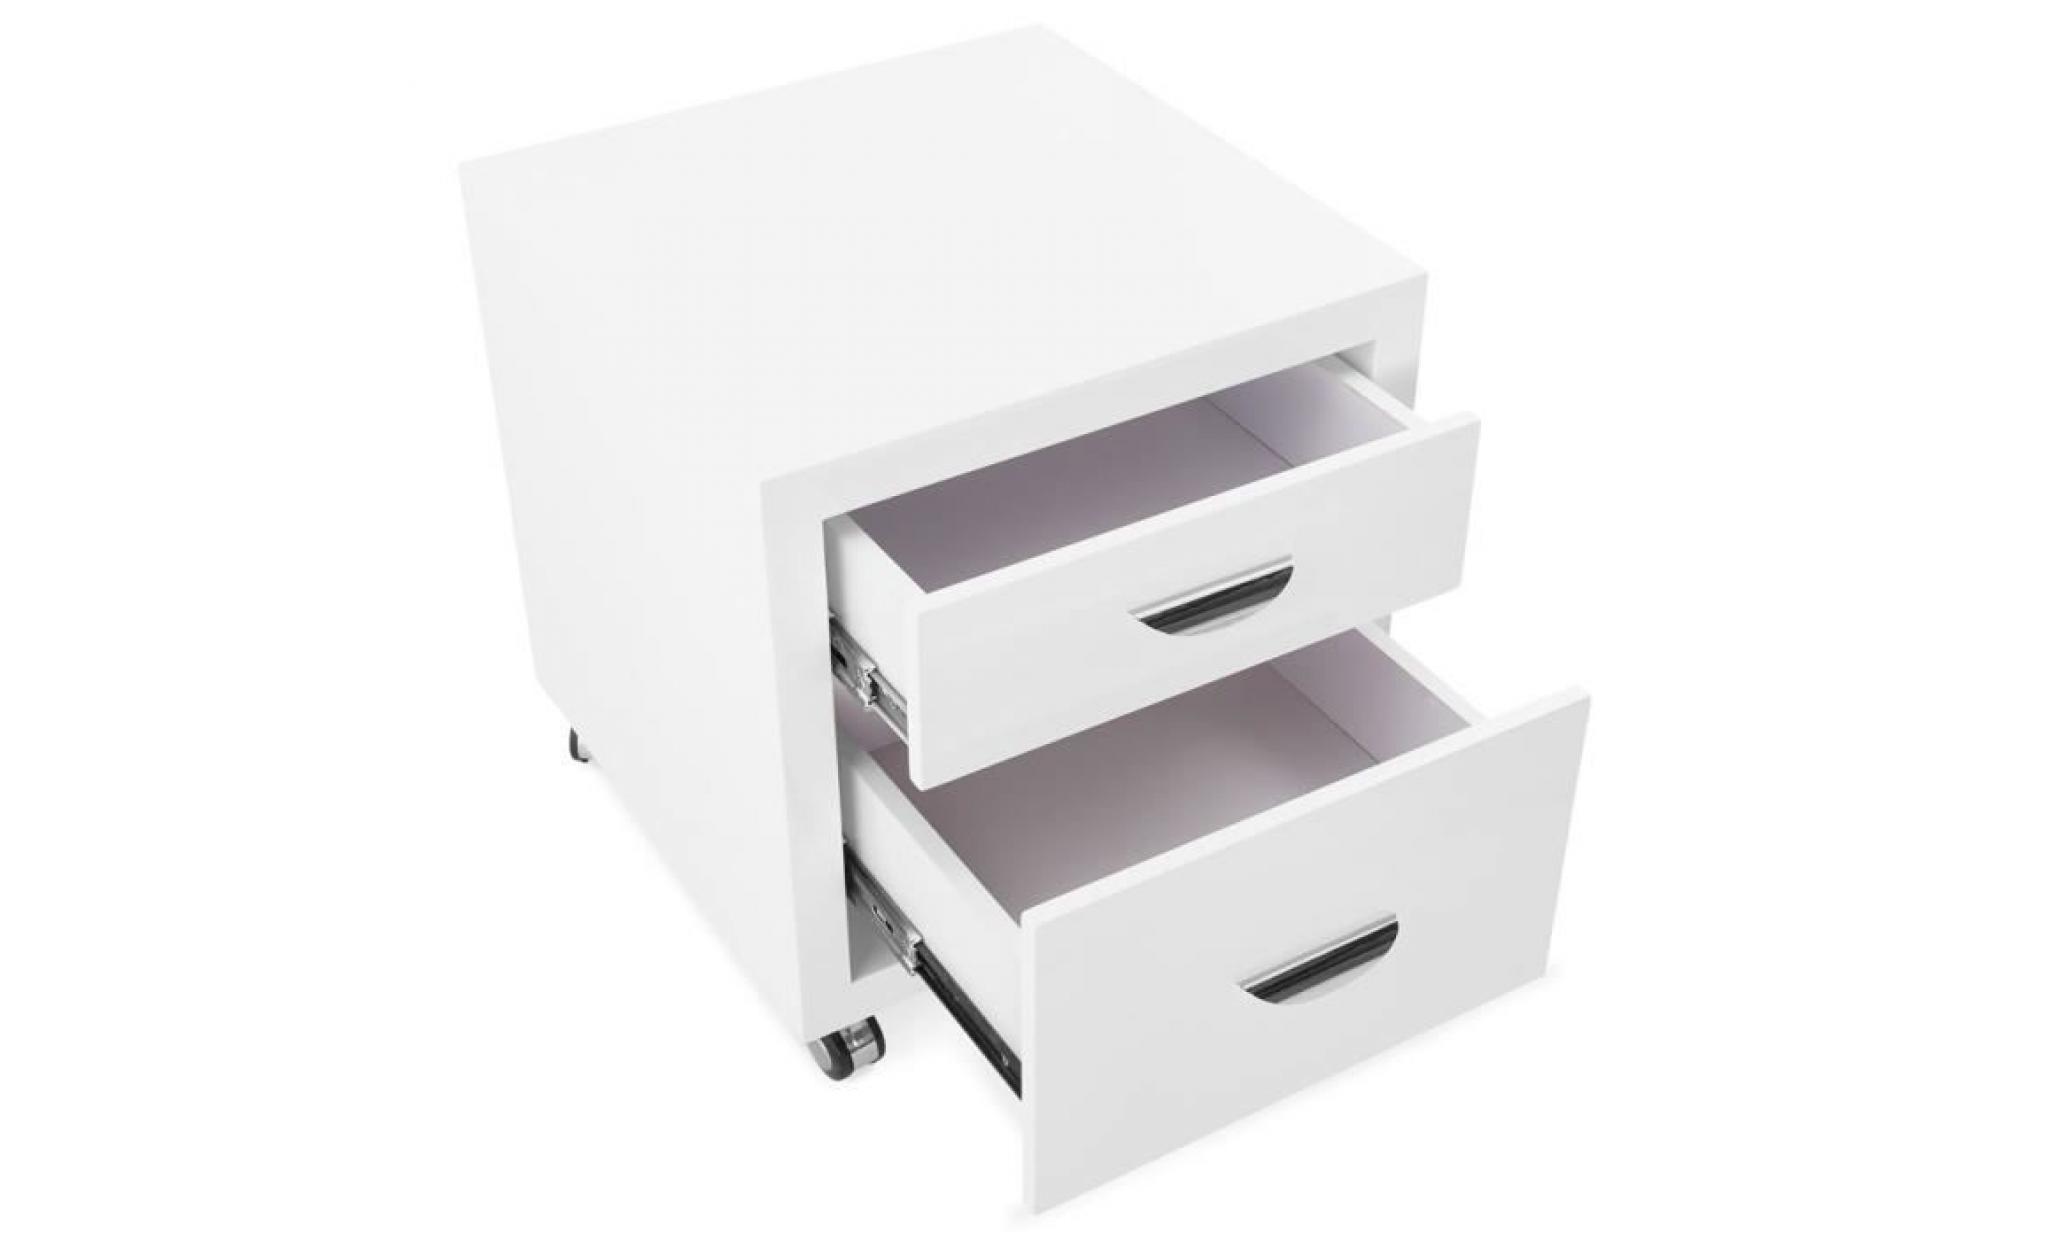 caisson de rangement olfus' blanc À tiroirs pour bureau dimensions 3d : 50x50x53 cm. caisson de bureau en bois avec 2 tiroirs. pas cher